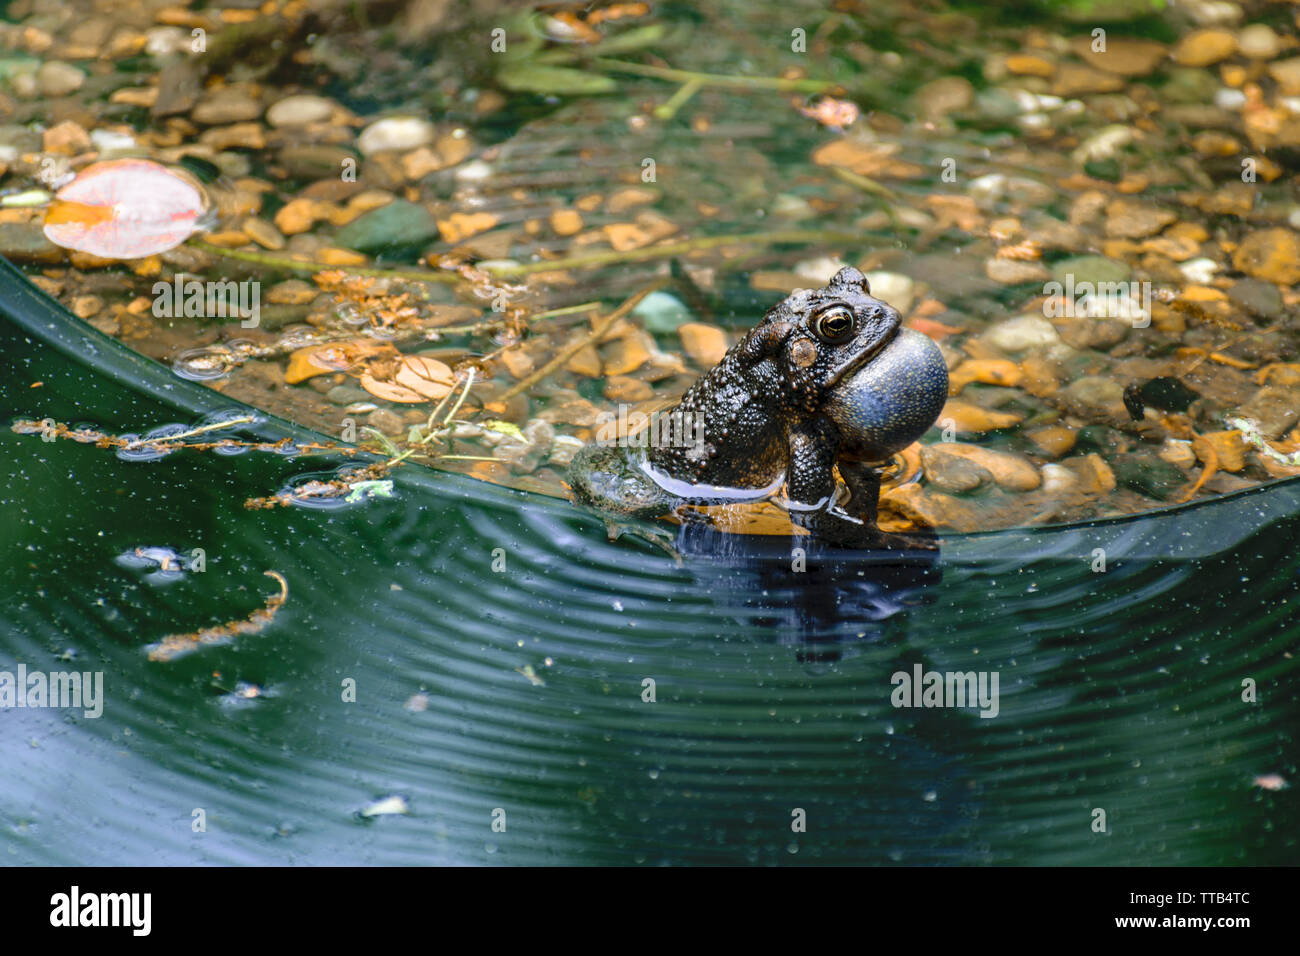 Un petit crapaud brun coassant avec gorge gonflée, est assis dans l'eau peu profonde. Banque D'Images